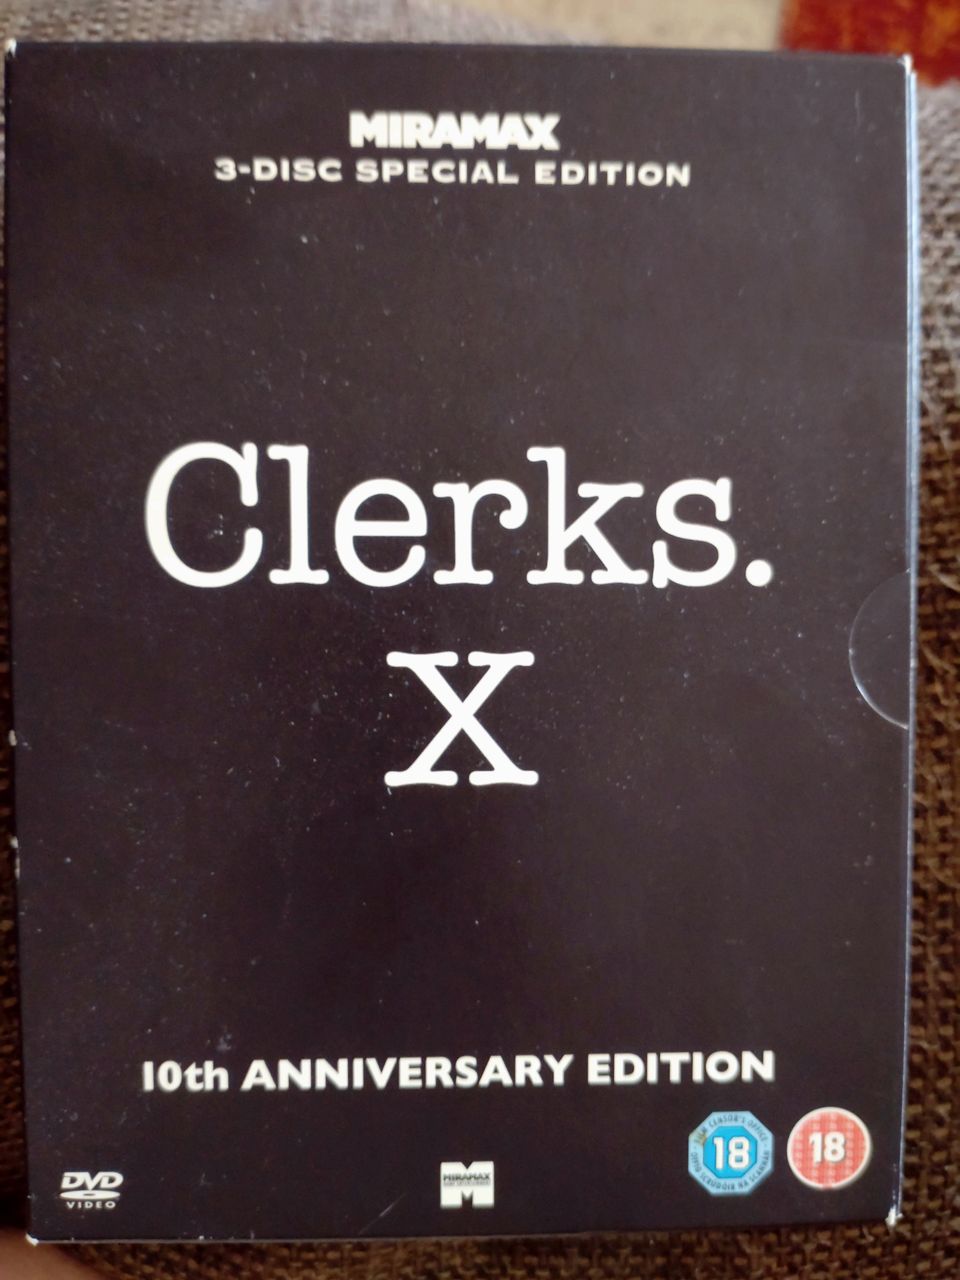 Clerks. X. - tiskirotat 10-vuotisjulkaisu